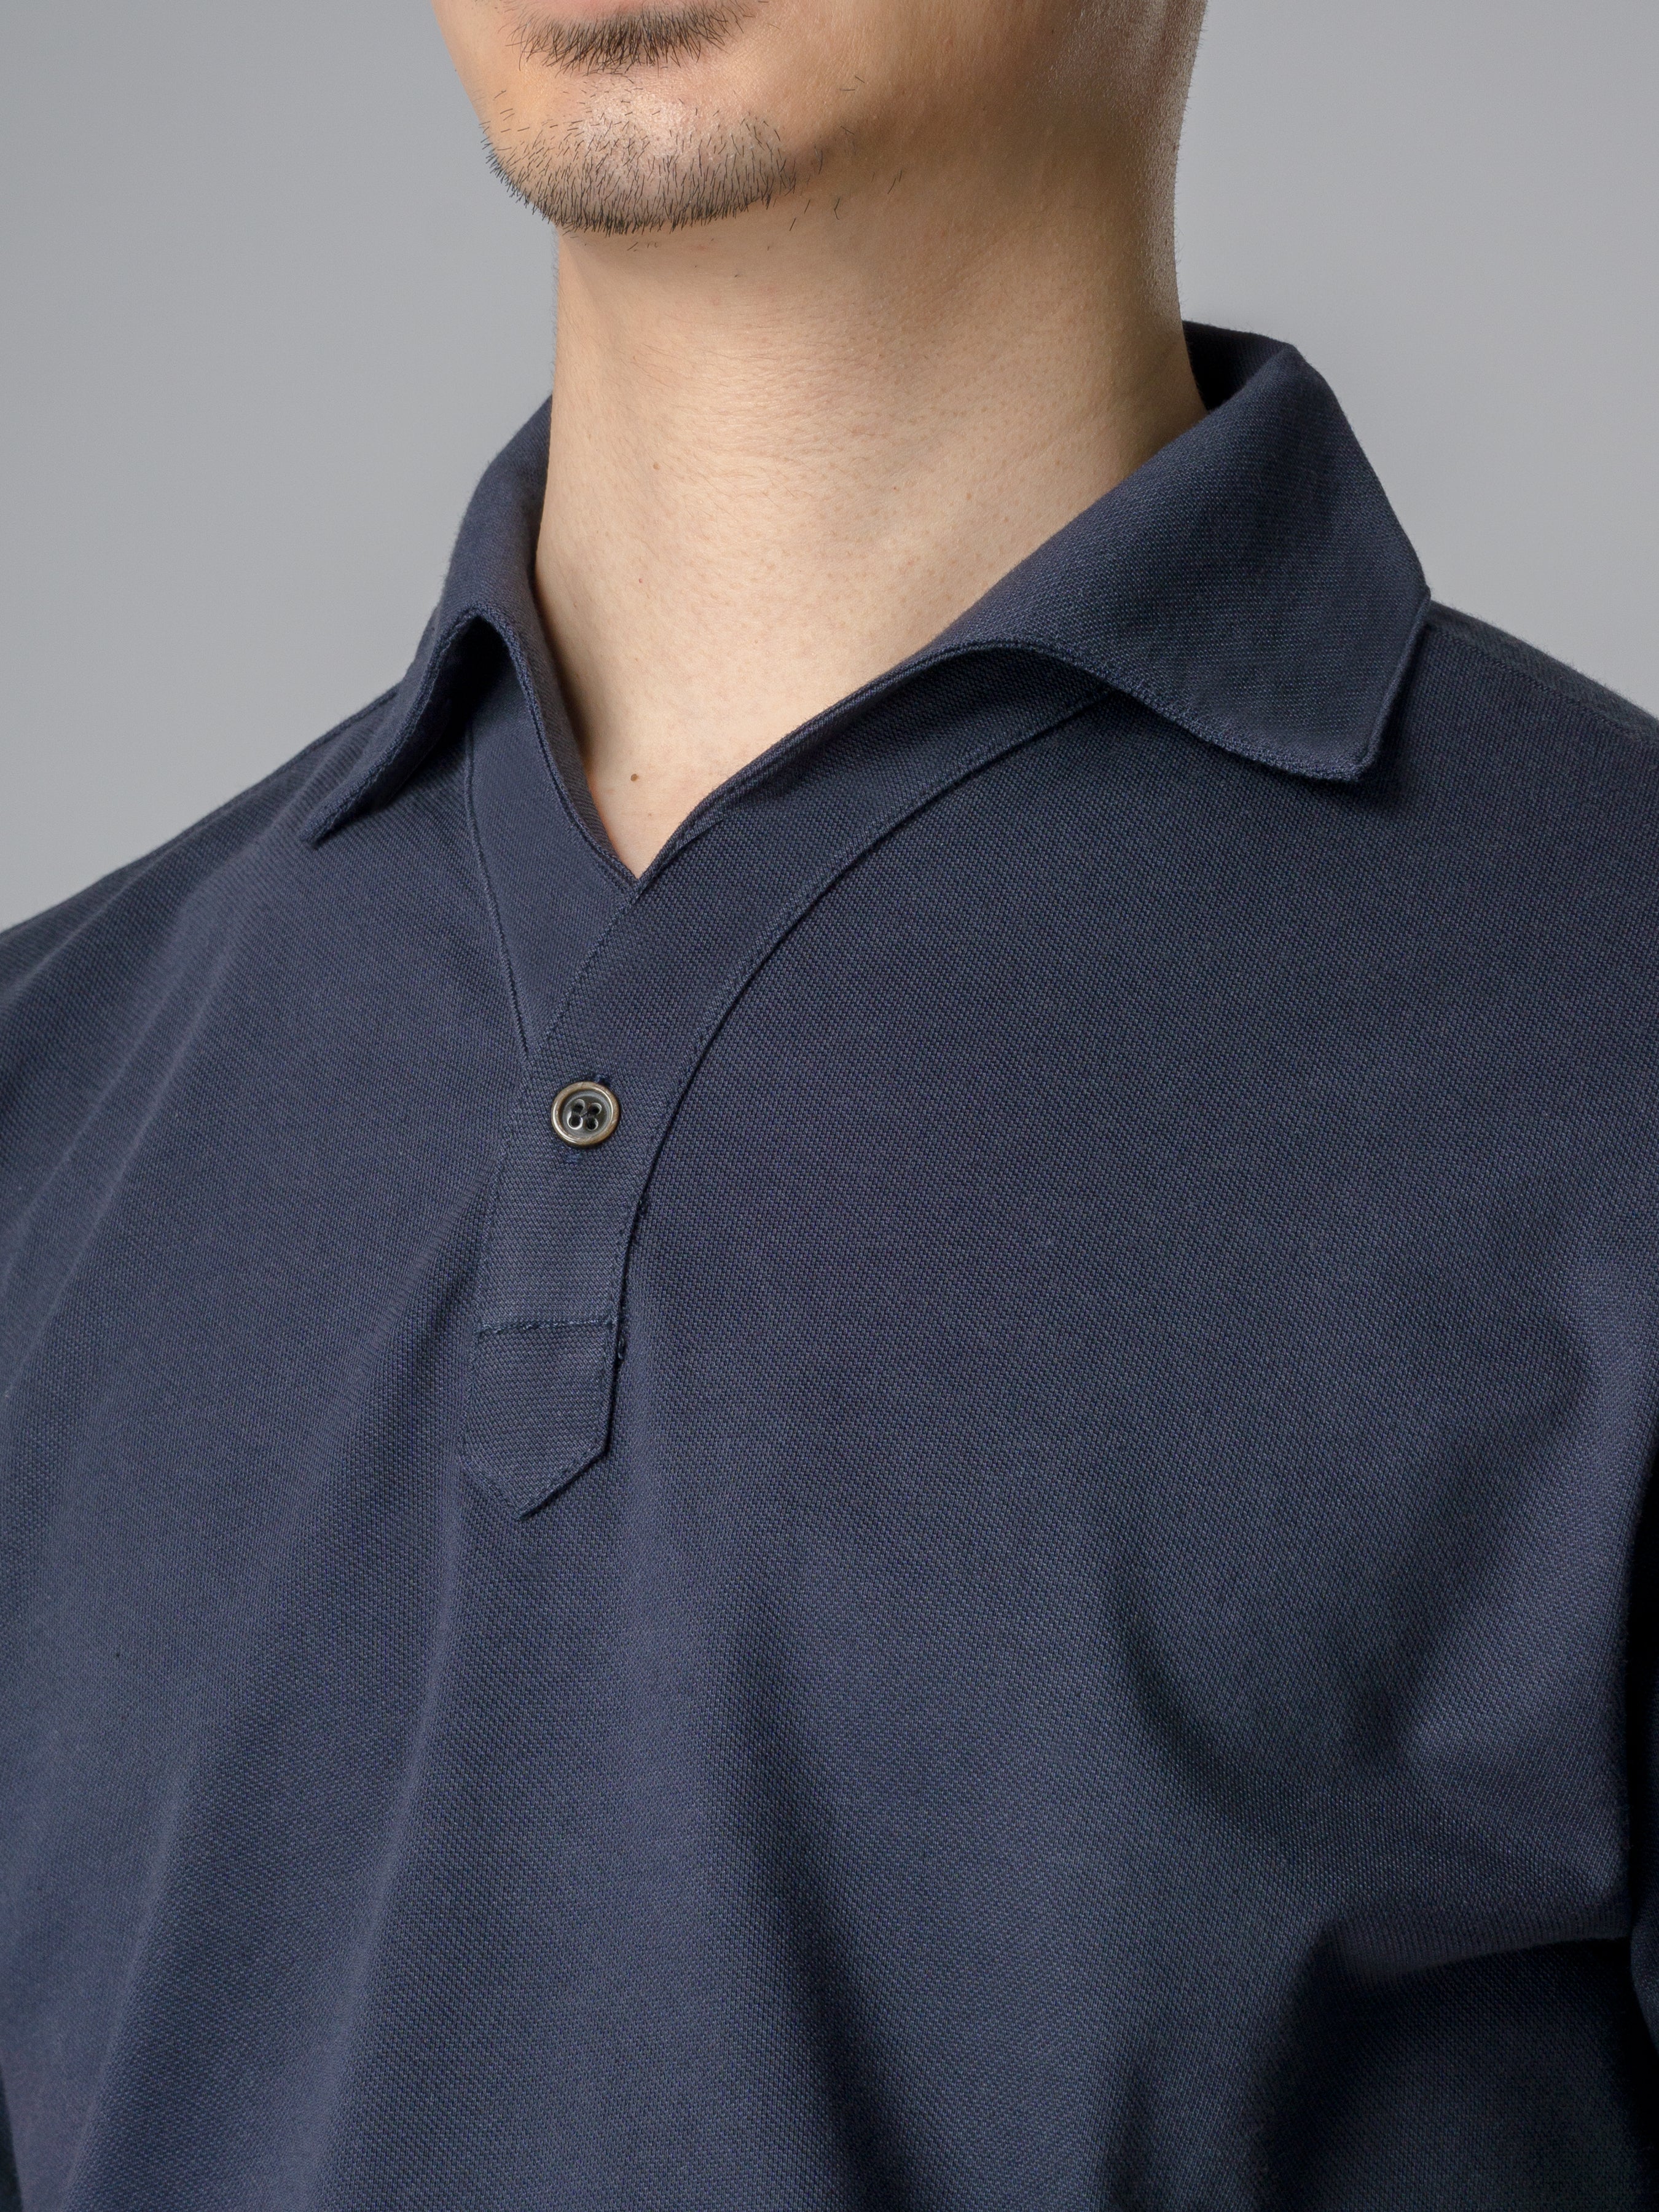 Ezio Polo Shirt - Navy Blue One-Piece Collar